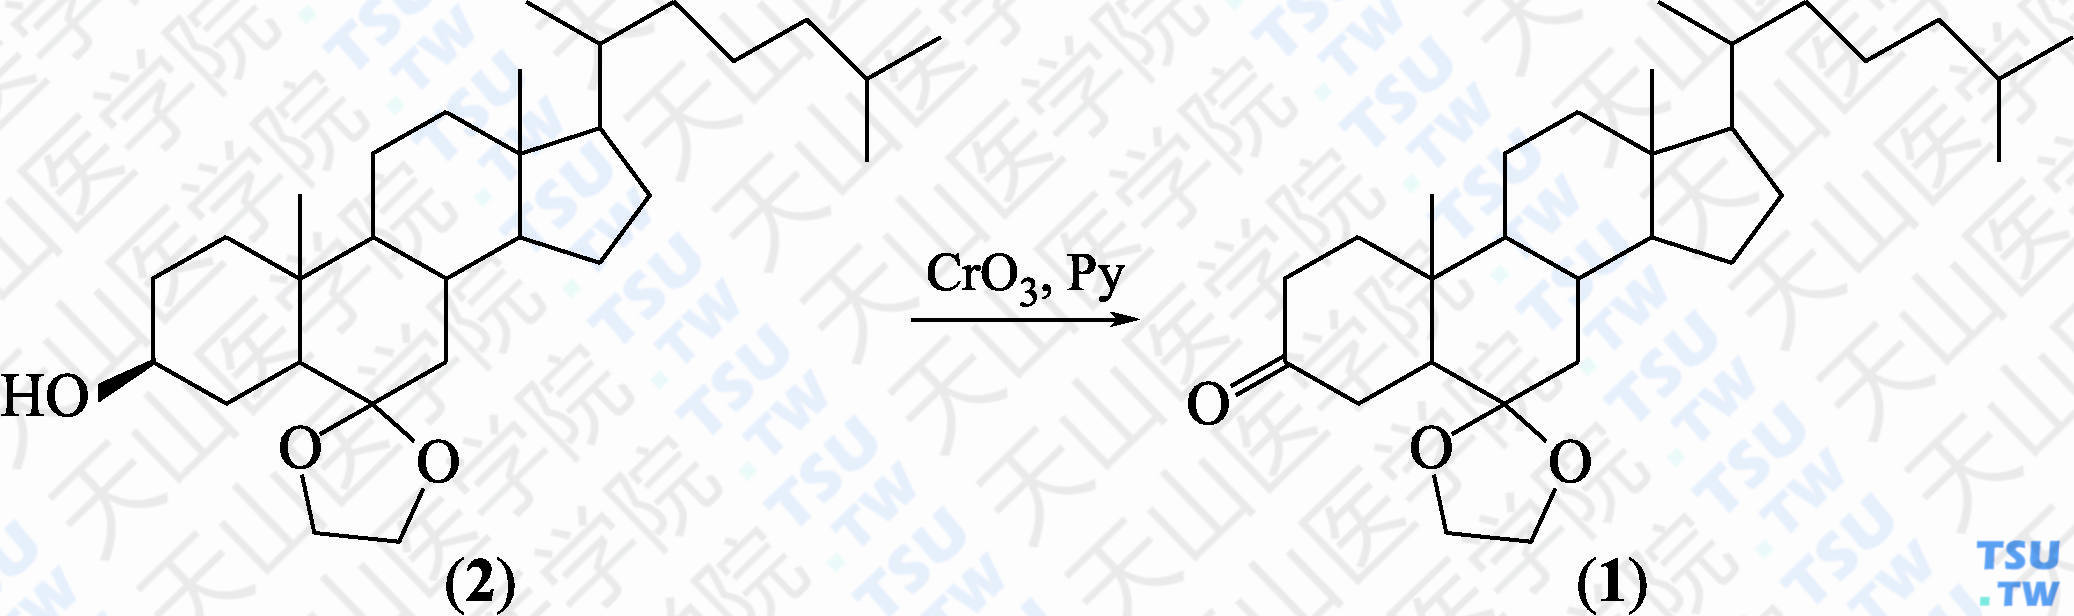 6，6-亚乙二氧基-5<i>α</i>-胆甾烷-3-酮（分子式：C<sub>29</sub>H<sub>48</sub>O<sub>3</sub>）的合成方法路线及其结构式